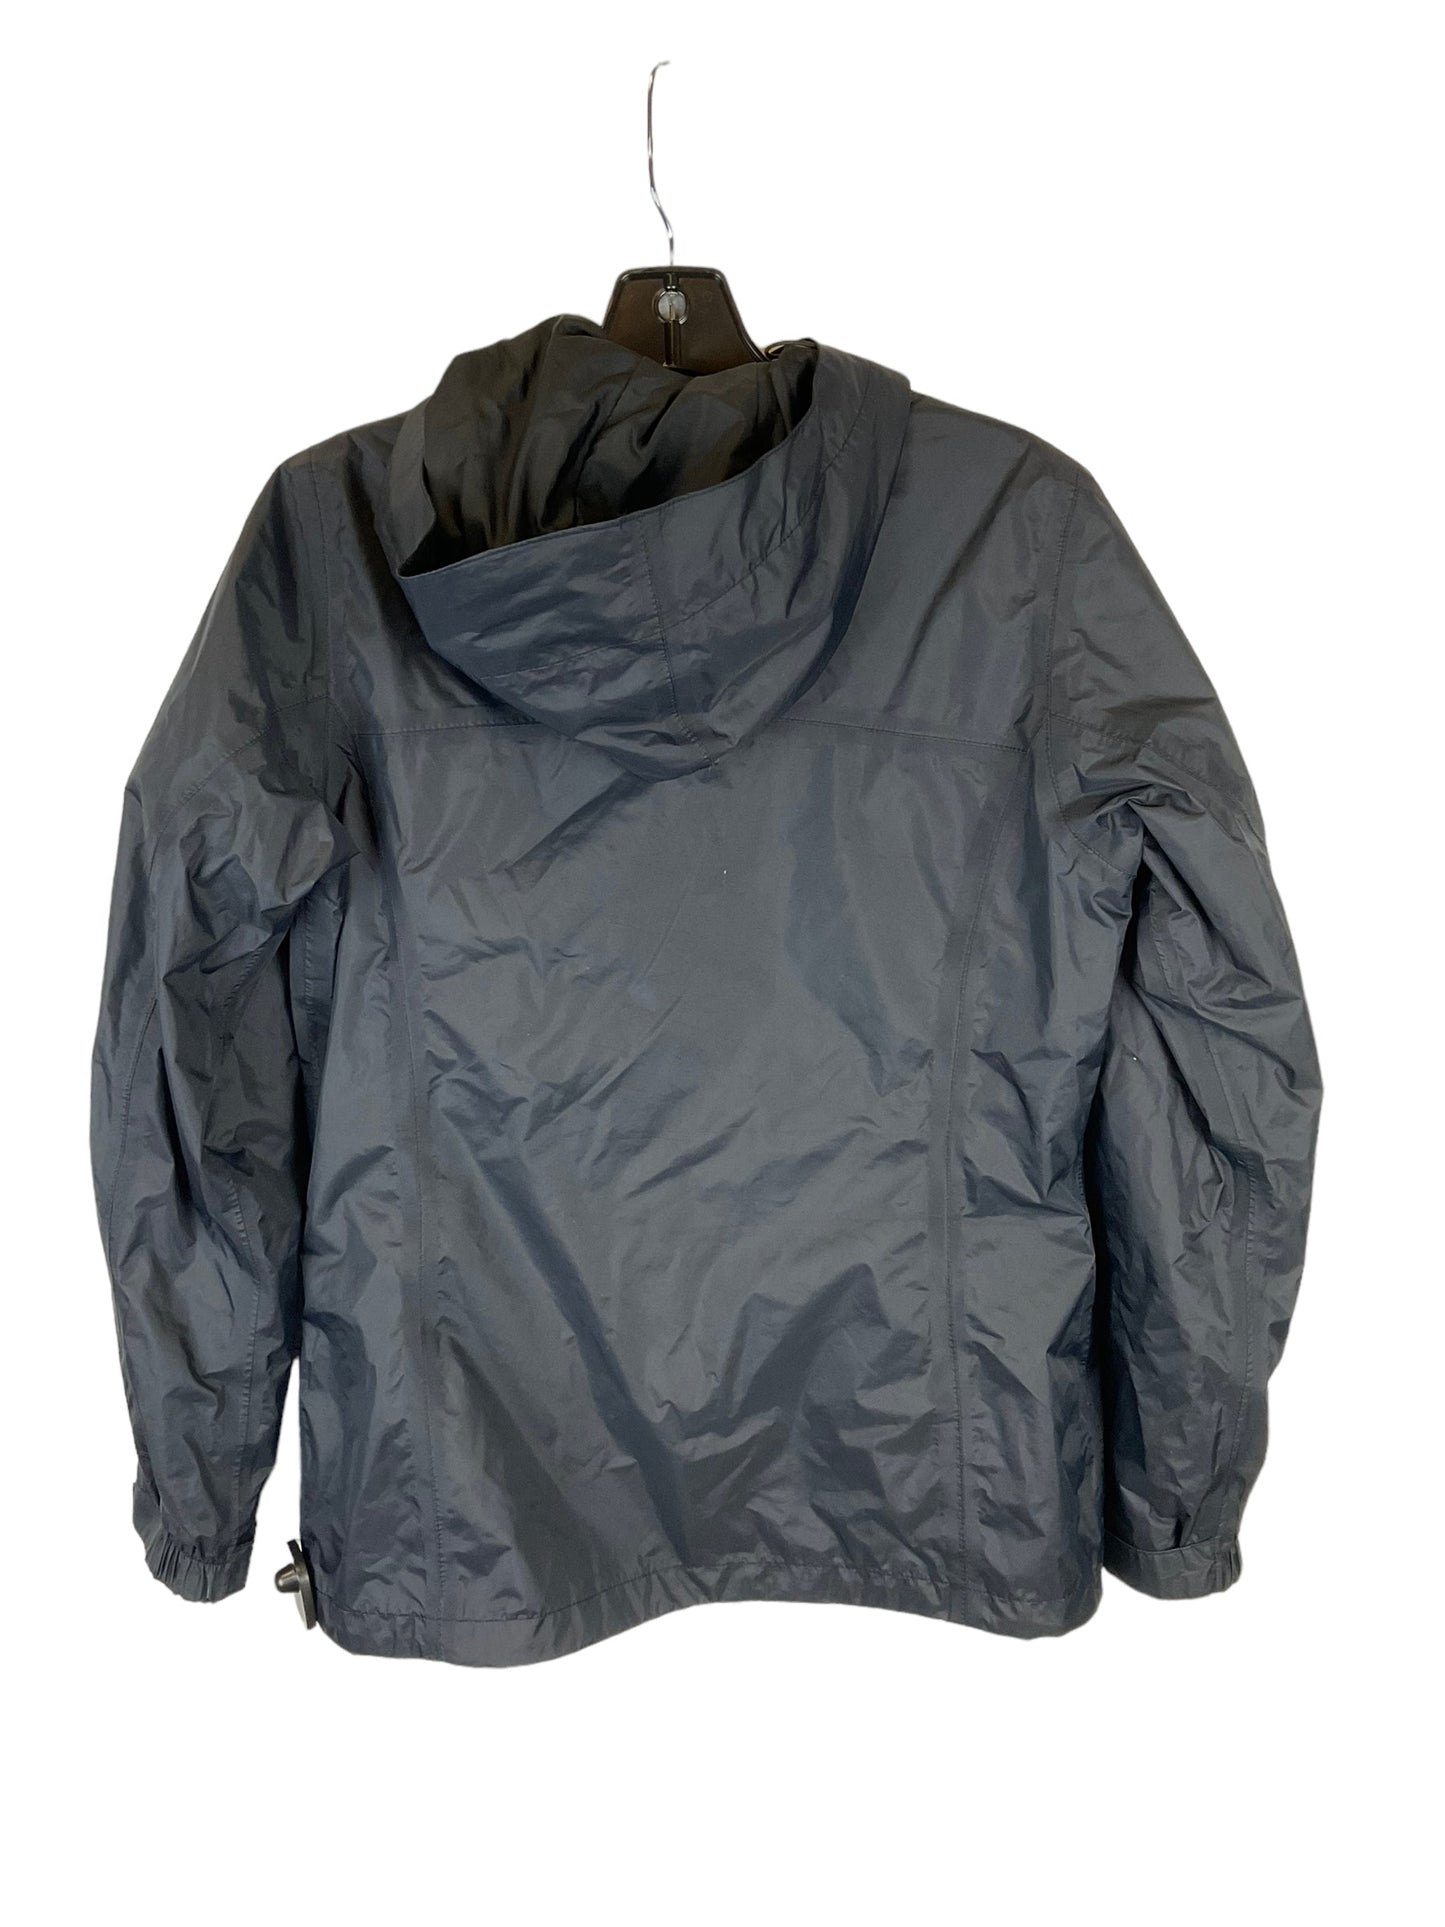 Jacket Windbreaker By Columbia  Size: M